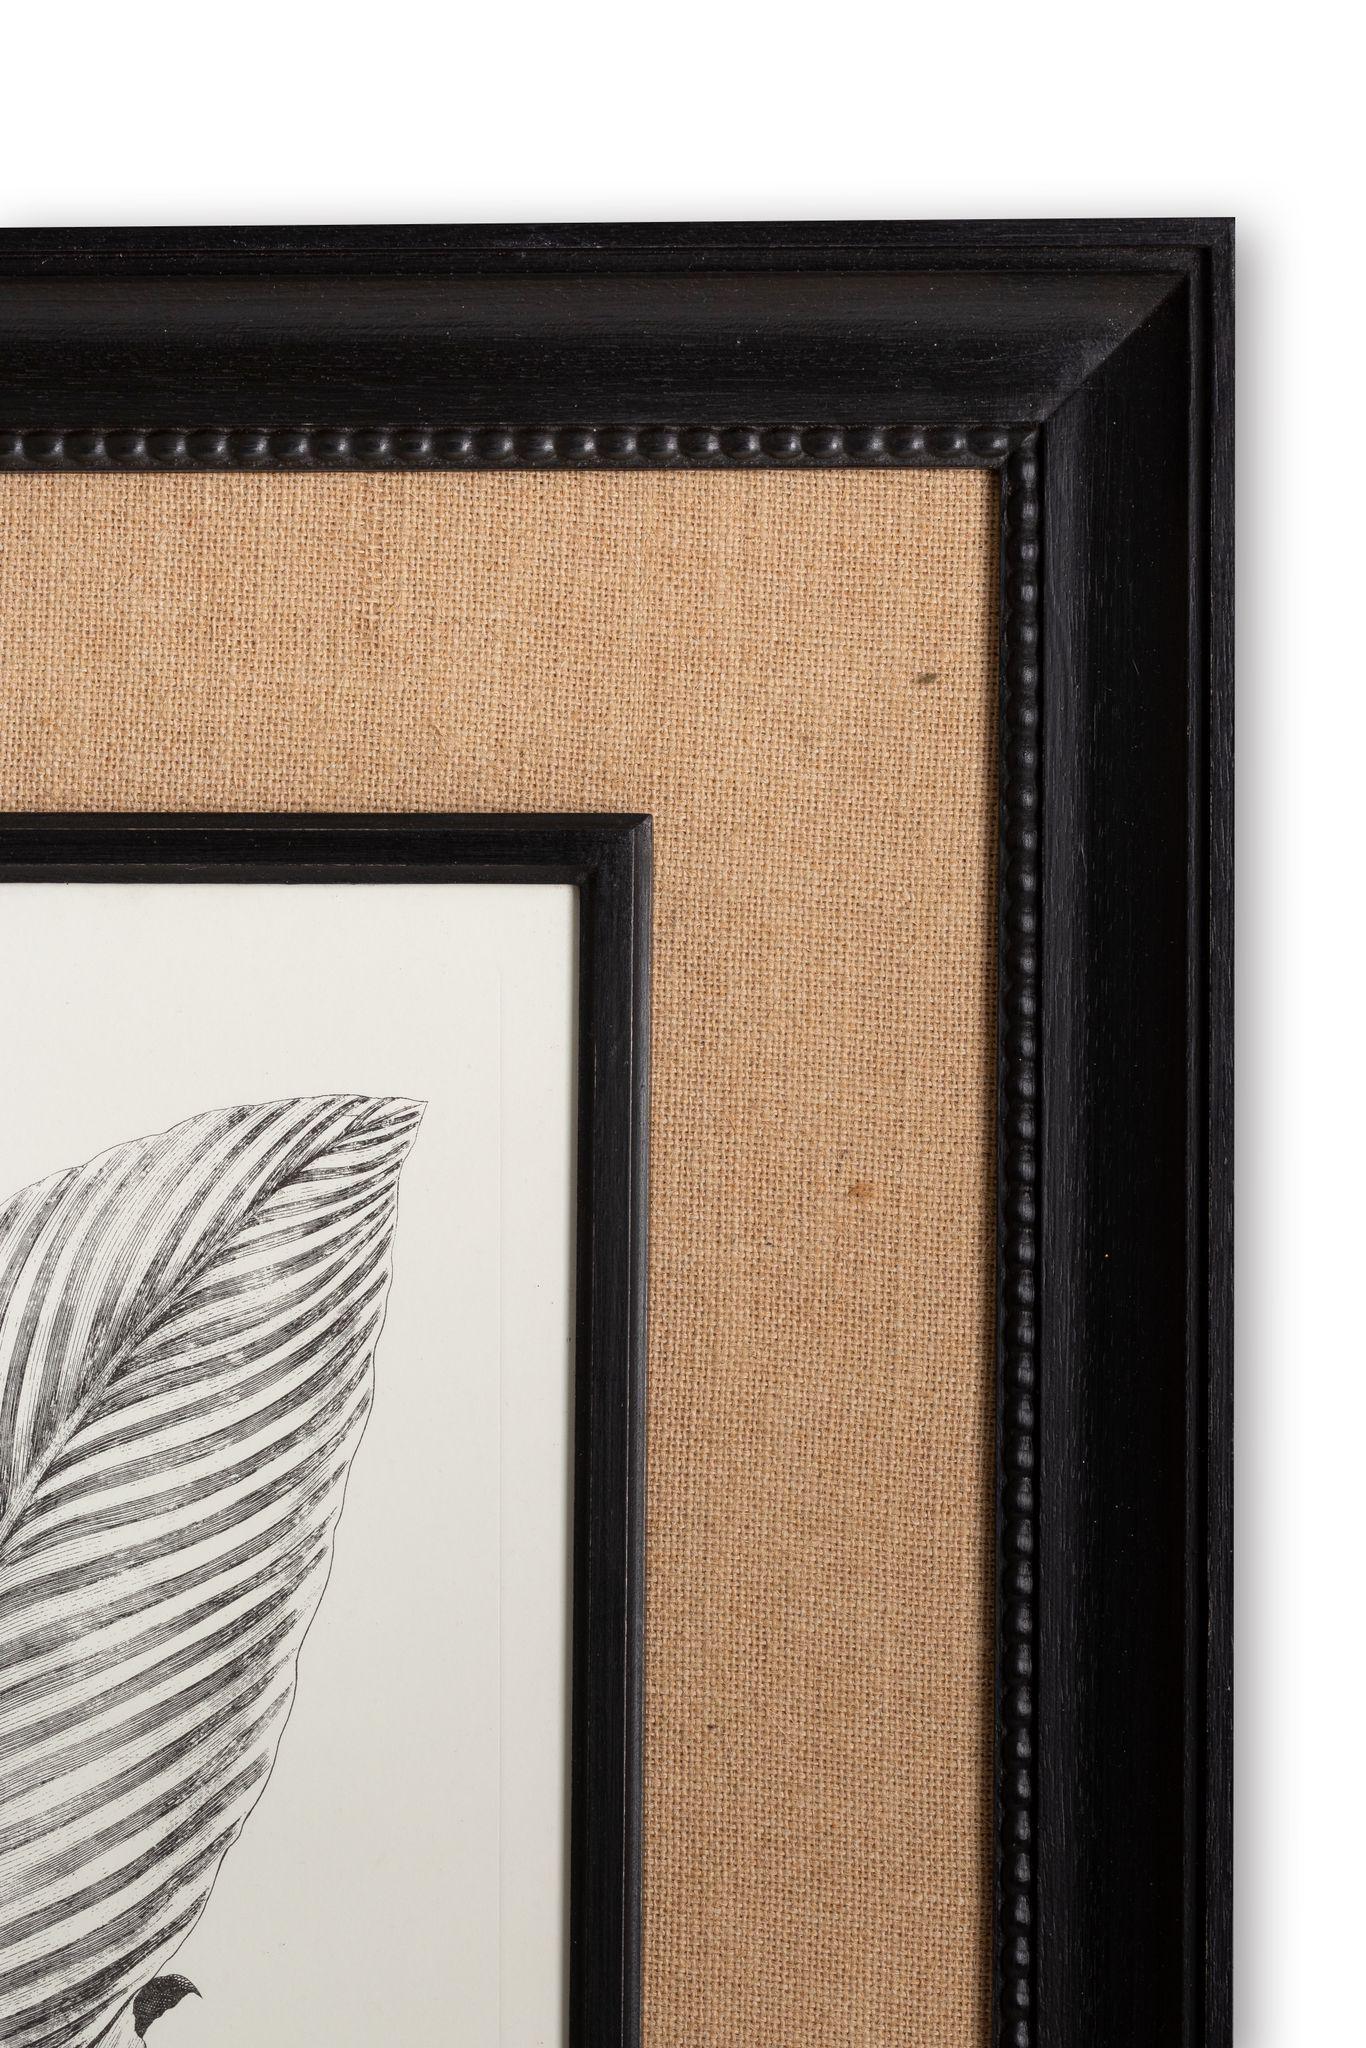 Print aus der Collection Botanique Schwarz-Weiß, die Canna Indica, mit einem schönen Holzrahmen mit einem Jute-Passpartout, die Farben und sumatute von Aquarellfarben bringt bereichert.

Collection'S von zwei: 
- Aloe Americana
- Canna Indica
-